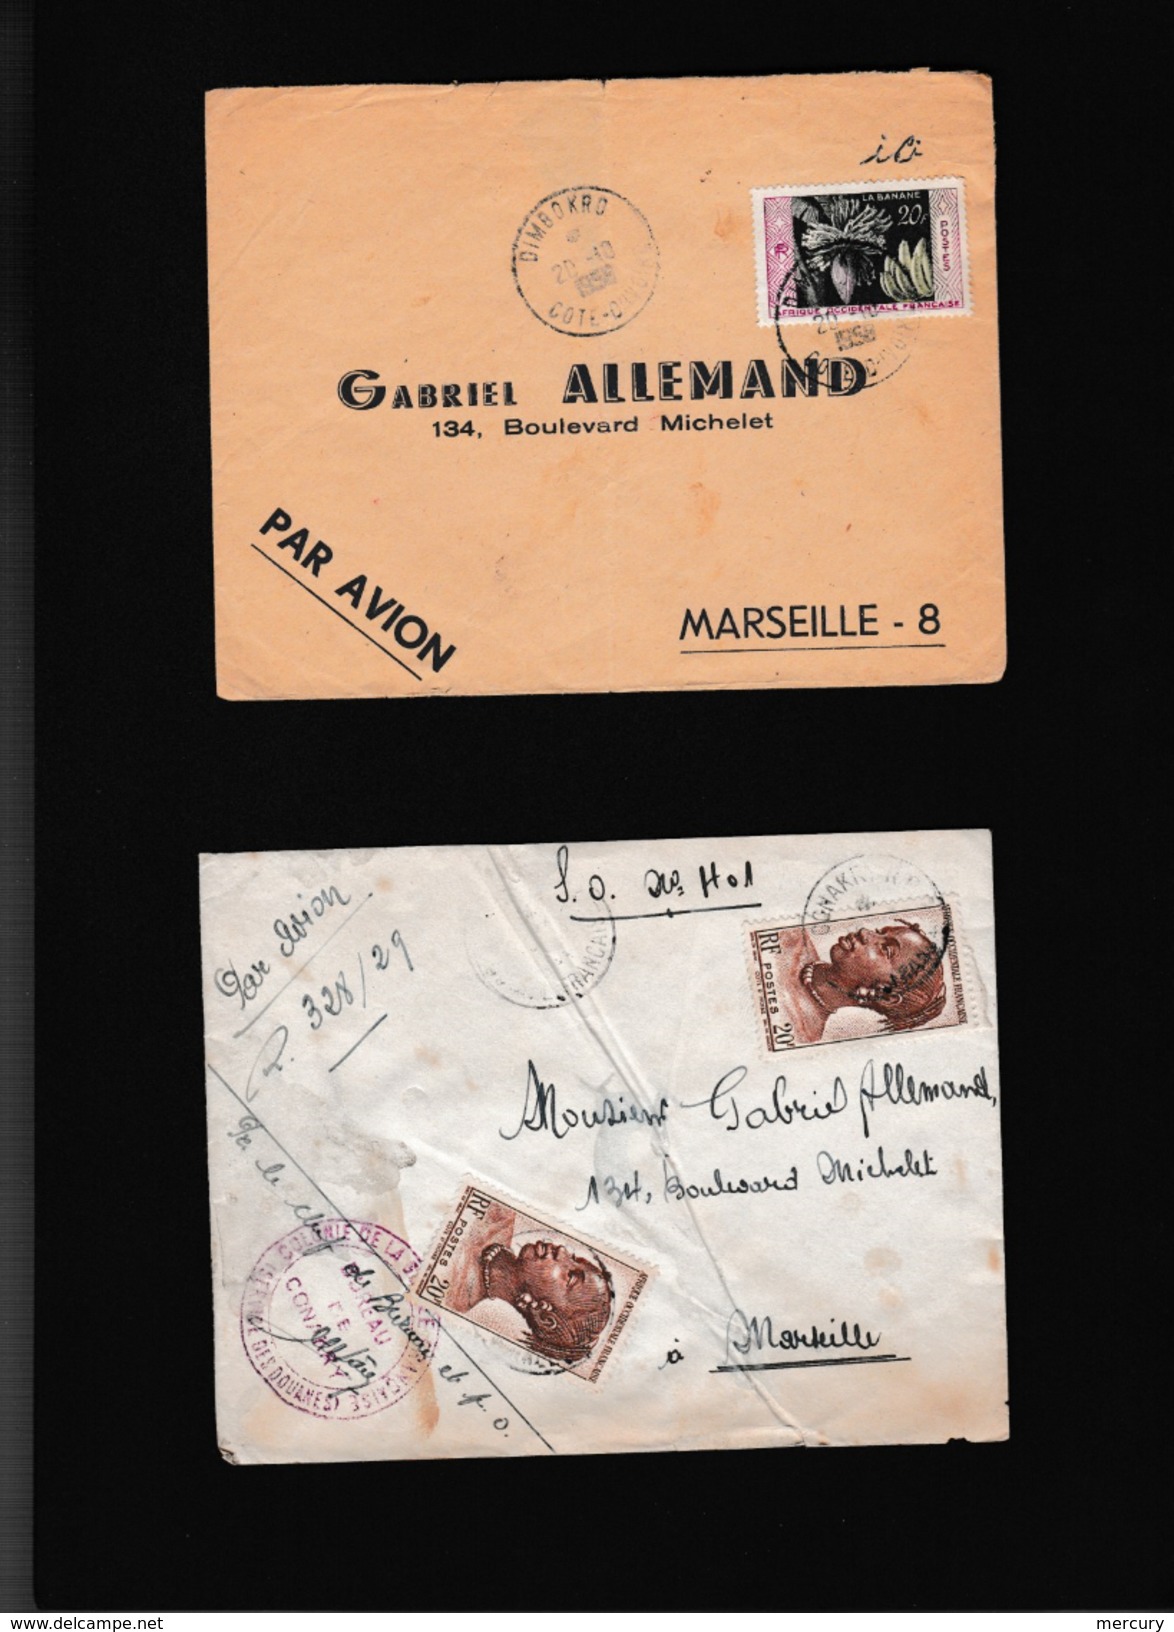 COLONIES - Bel ensemble de 82 lettres des années 50 d'Afrique noire avec des petits bureaux - 41 scans